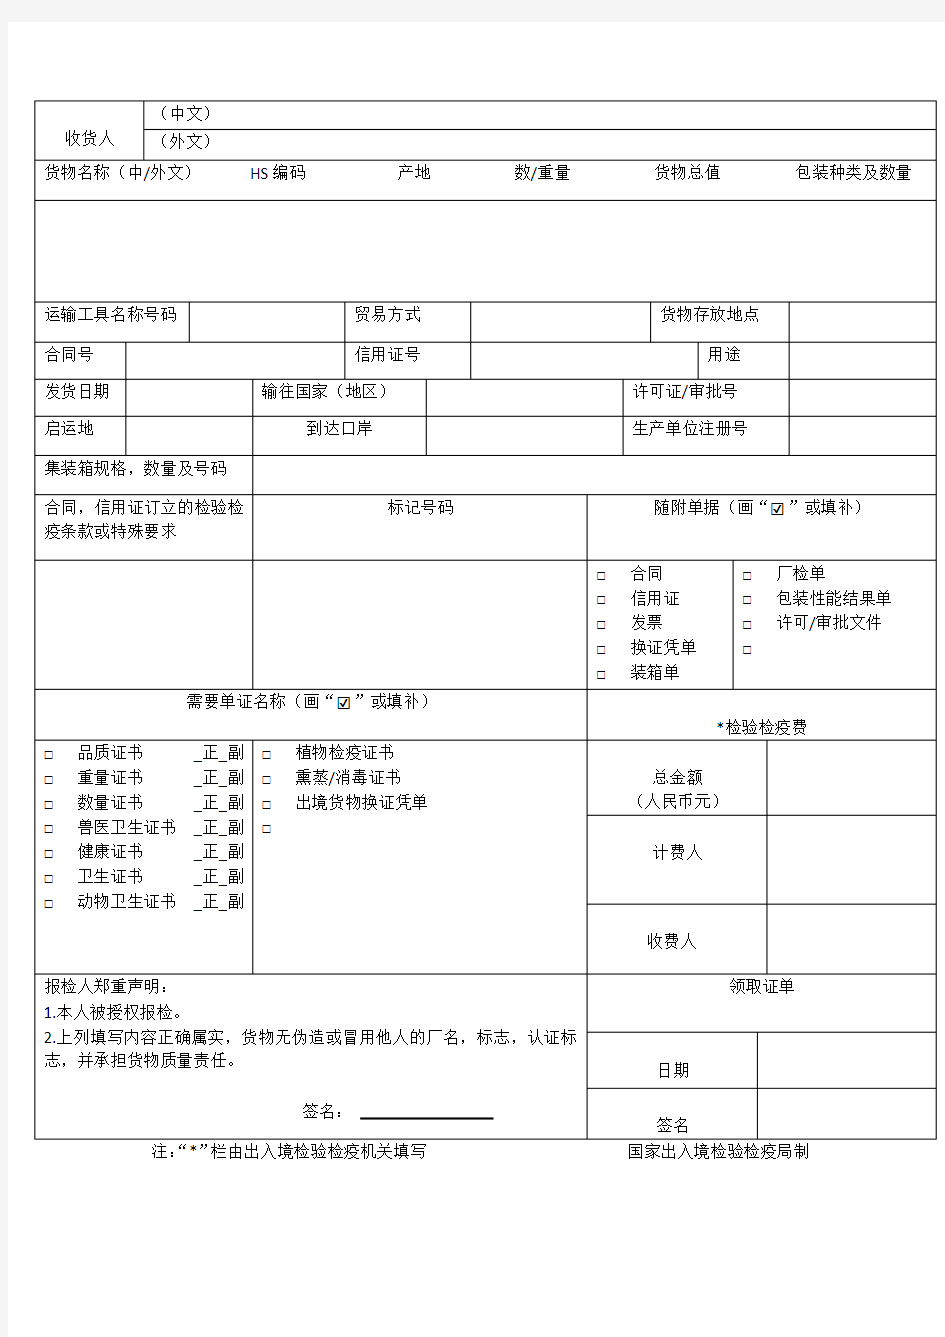 中华人民共和国出入境检验检疫出境货物报检单模板‘